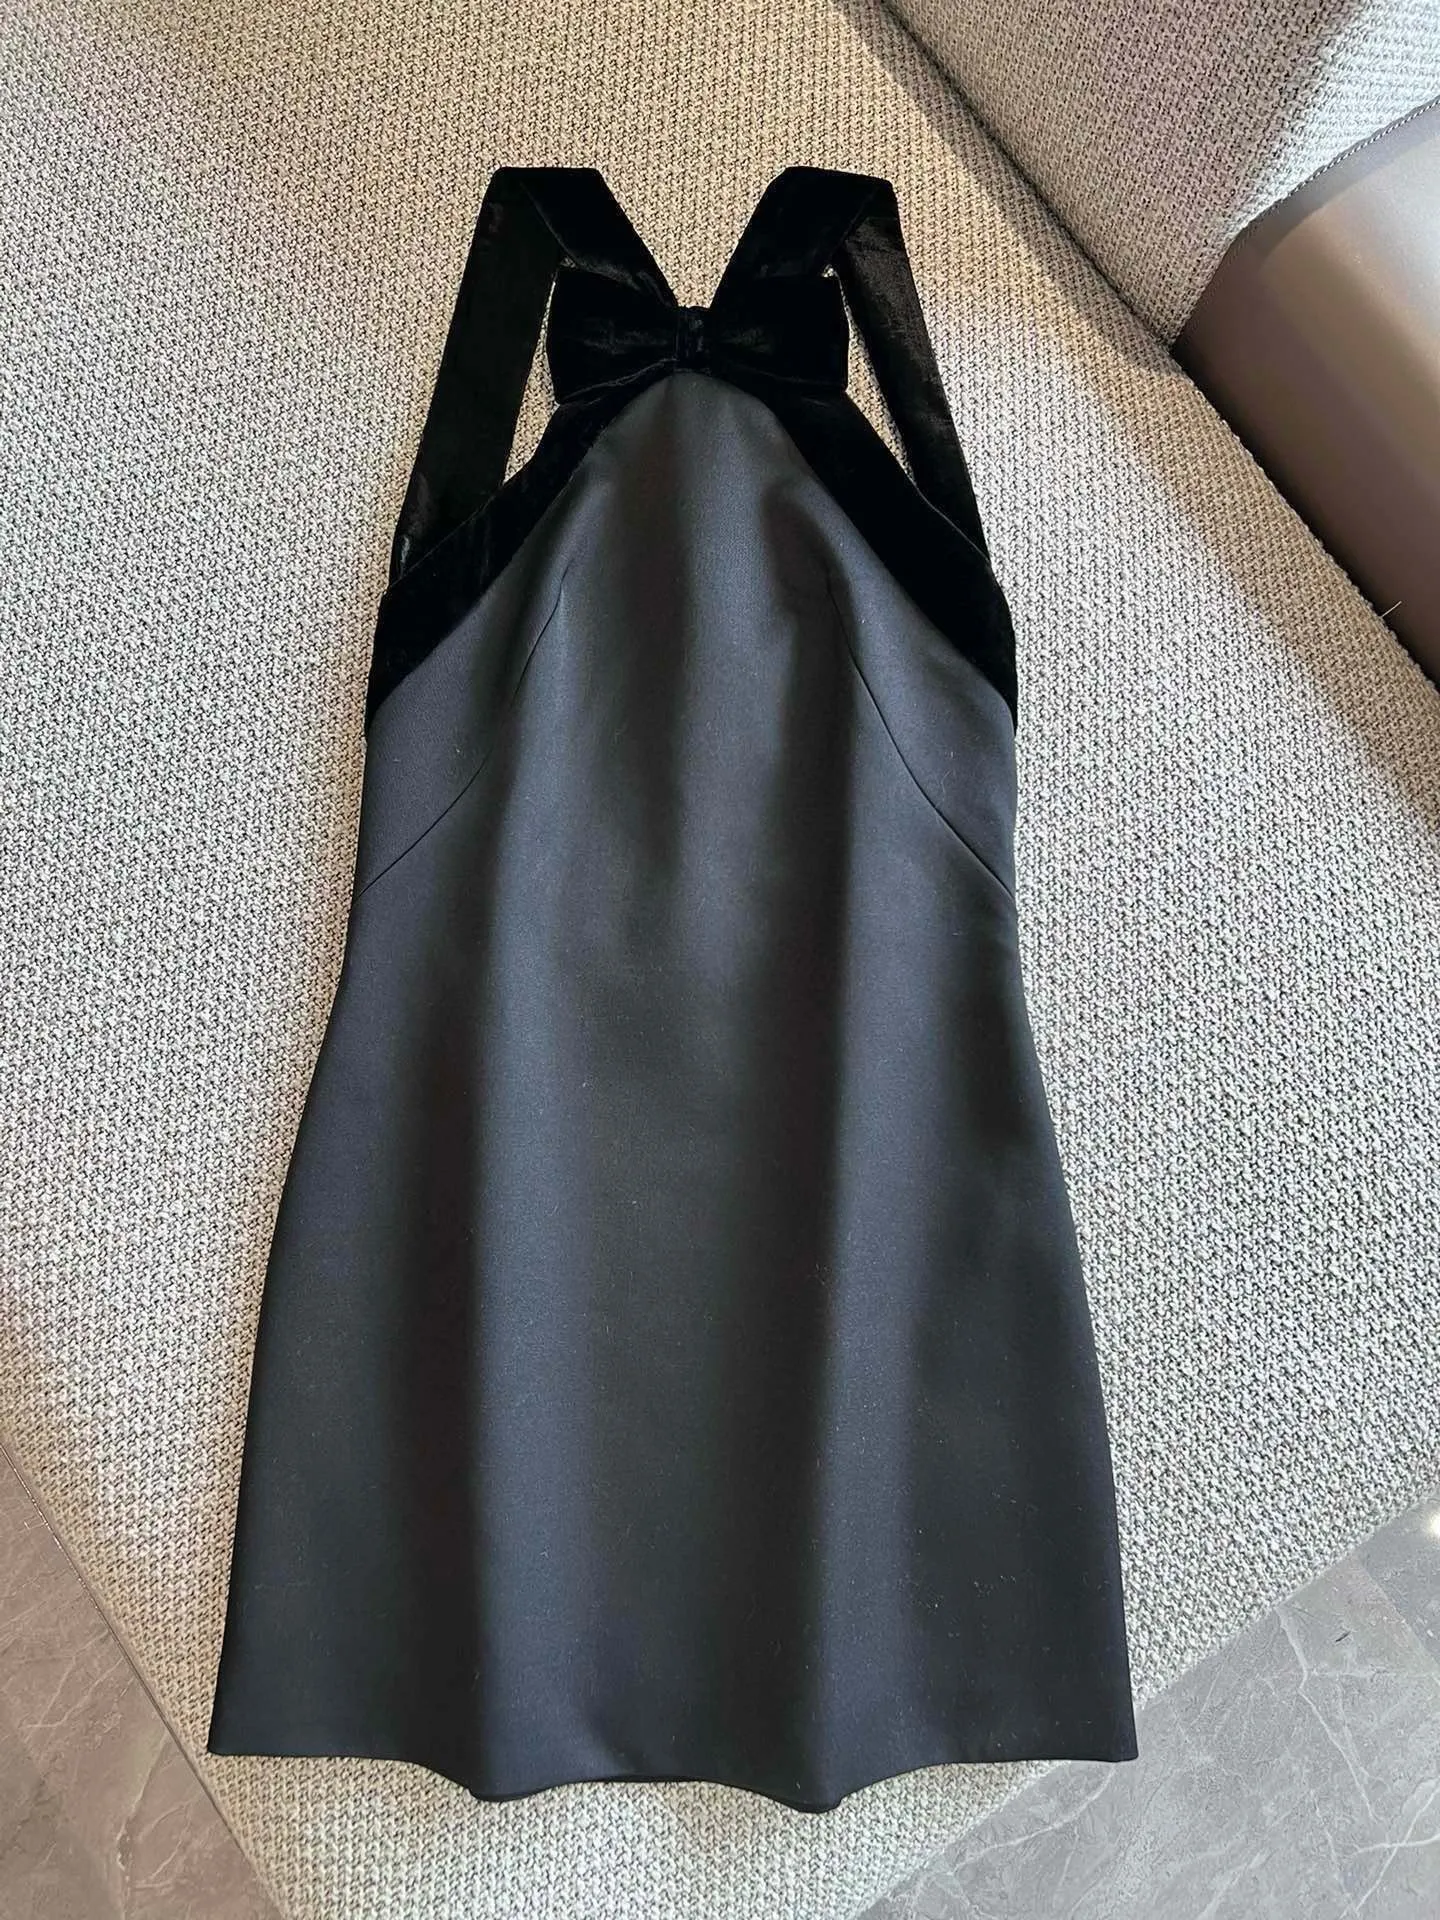 ブラックレディエレガントなベルベットパッチワークドレス女性ノースリーブヴィンテージハイウエスト